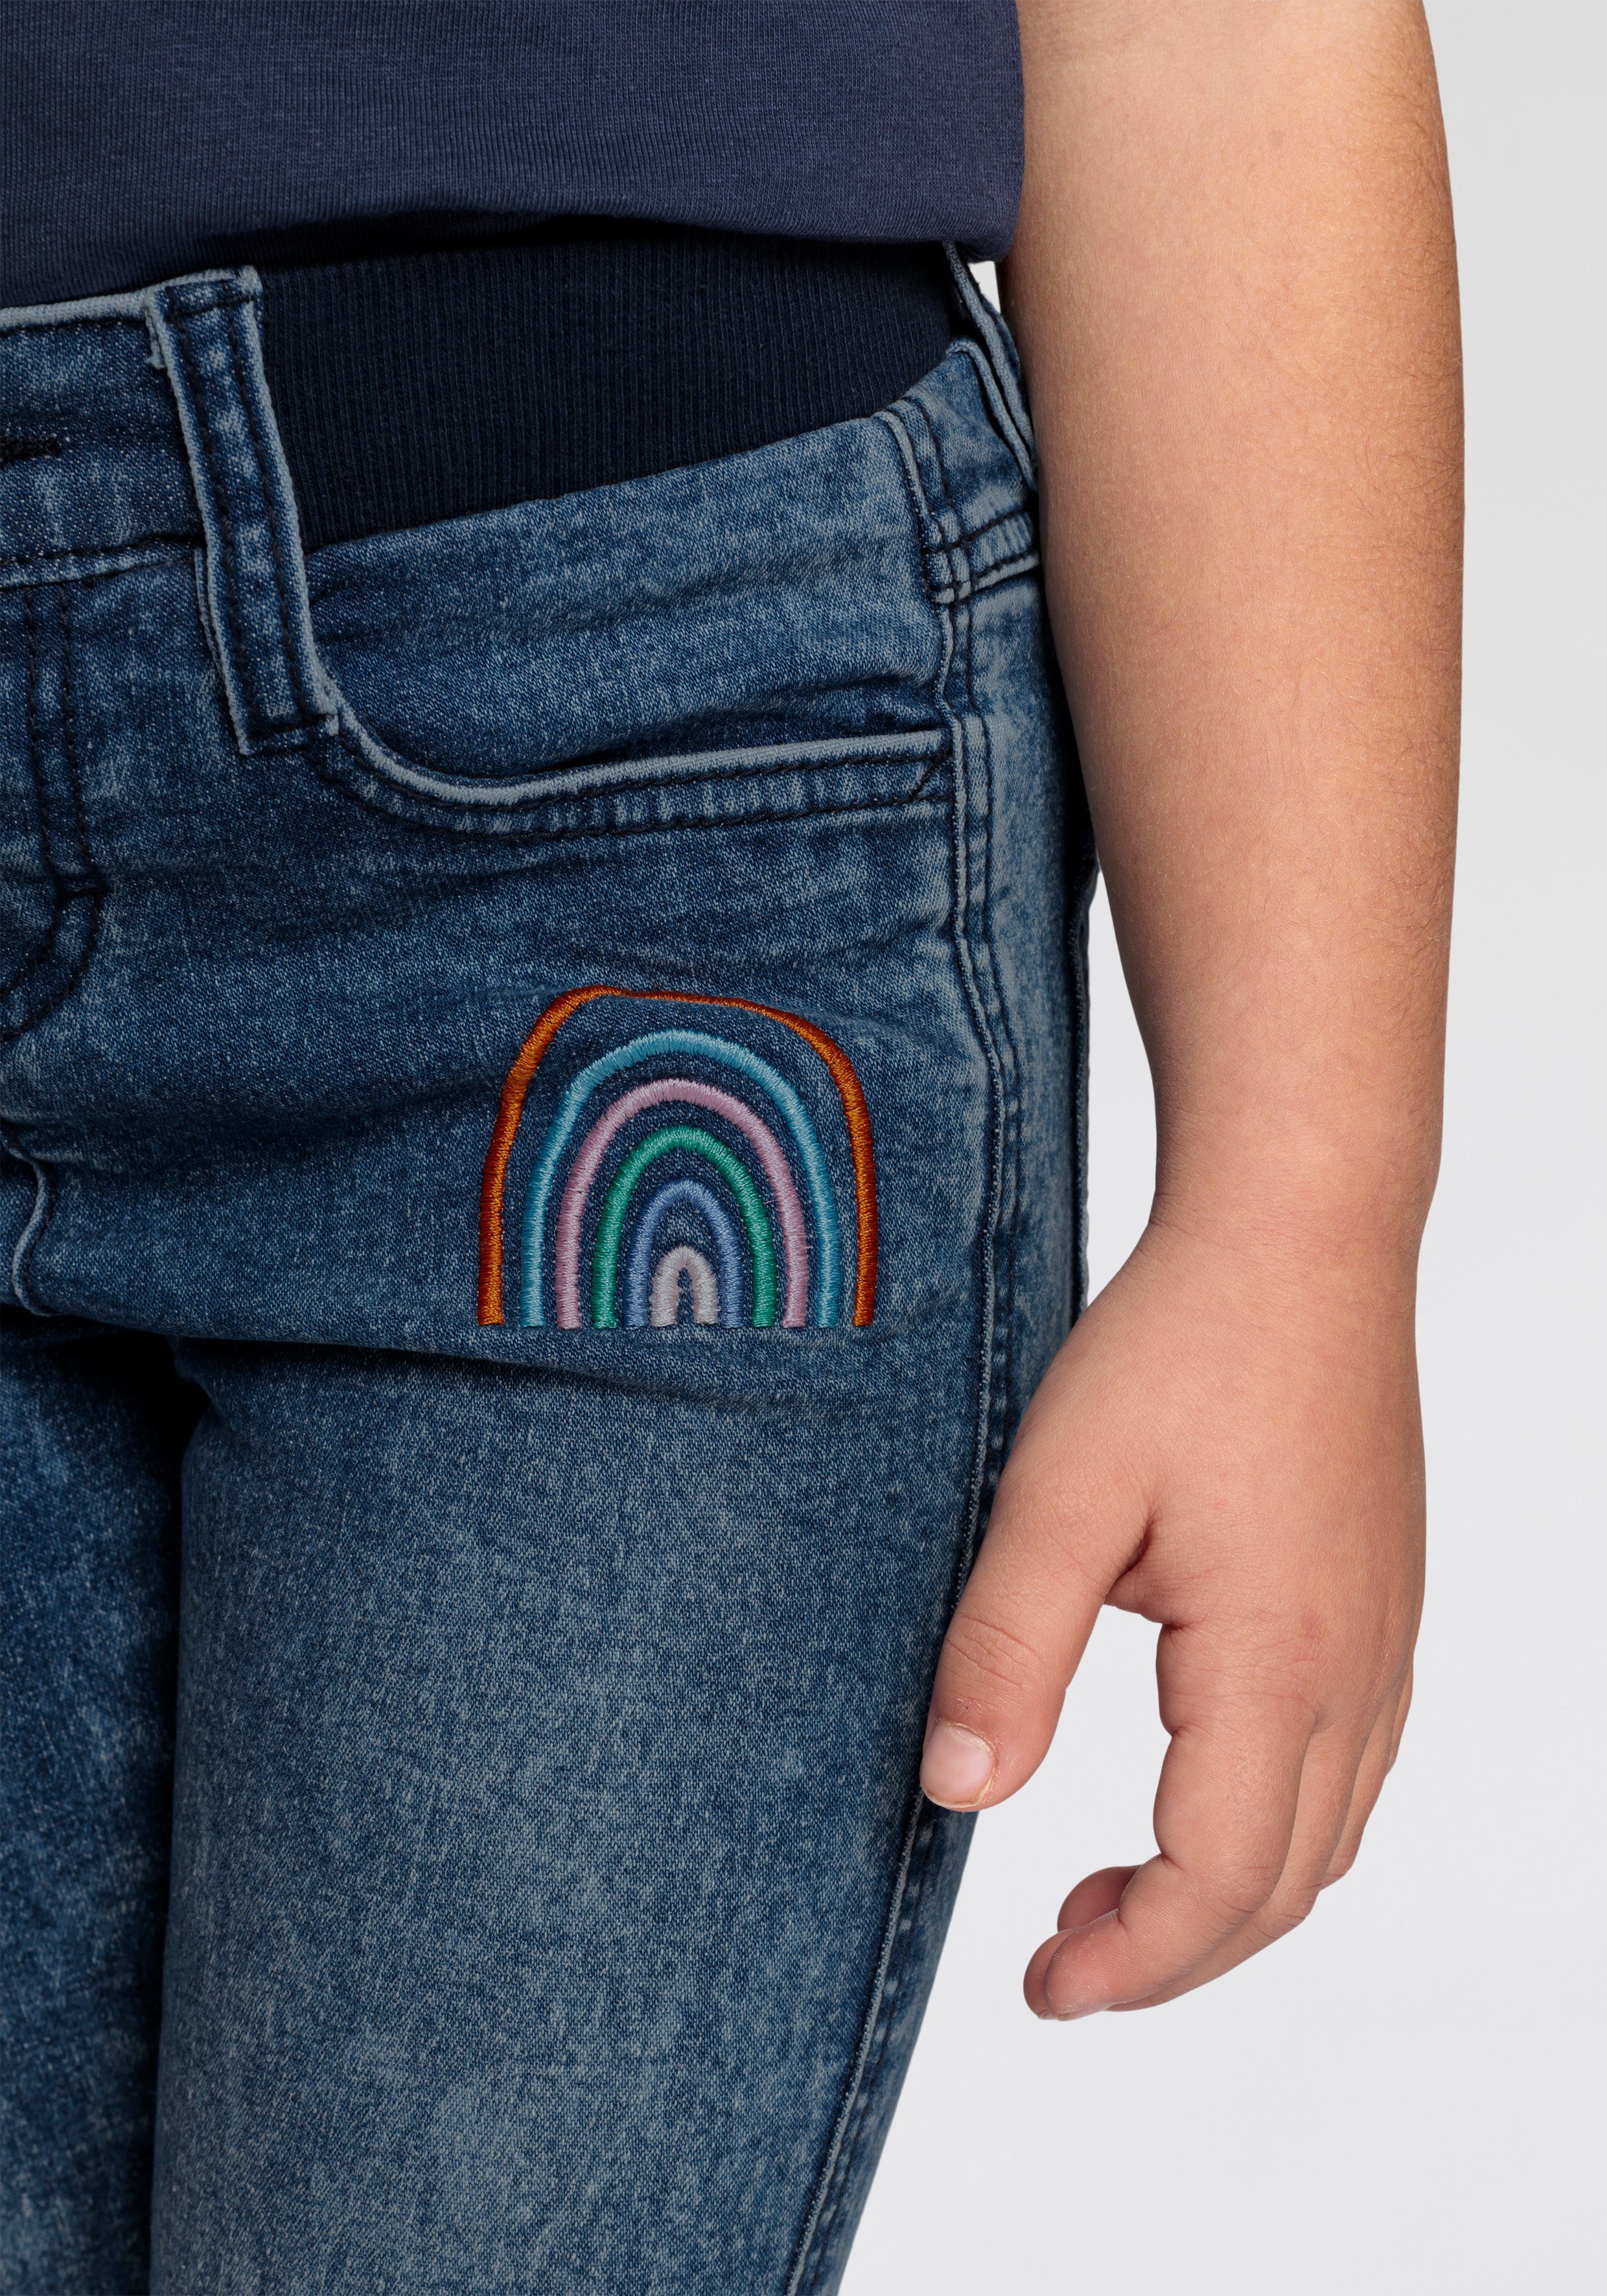 KIDSWORLD Stretch-Jeans mit Stickerei toller